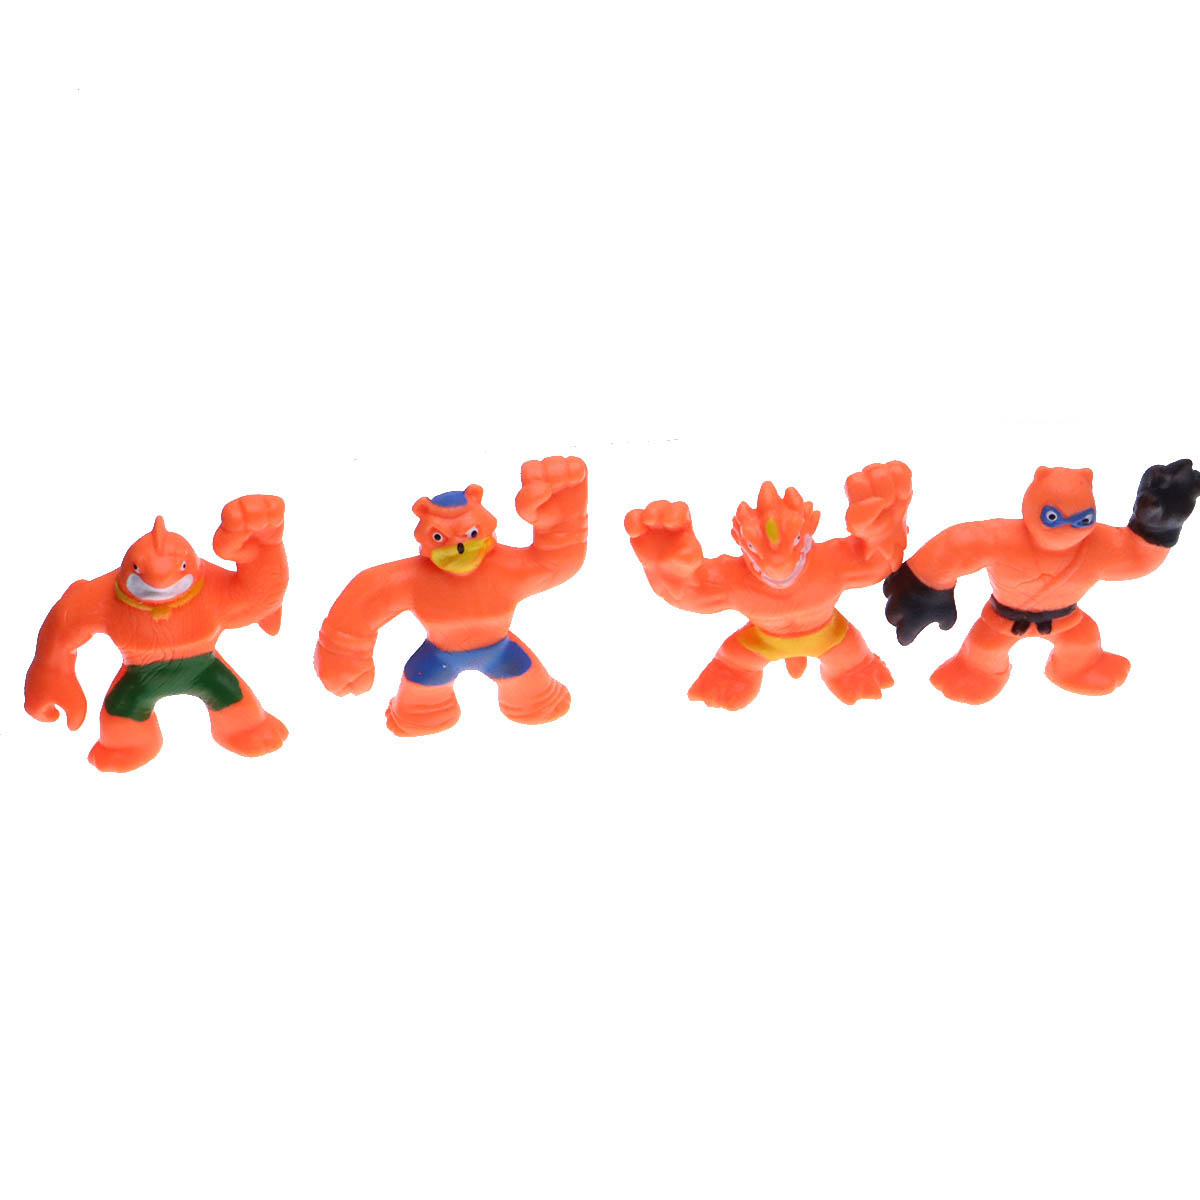 Тянущаяся фигурка игрушка в коробке, цвет оранжевый